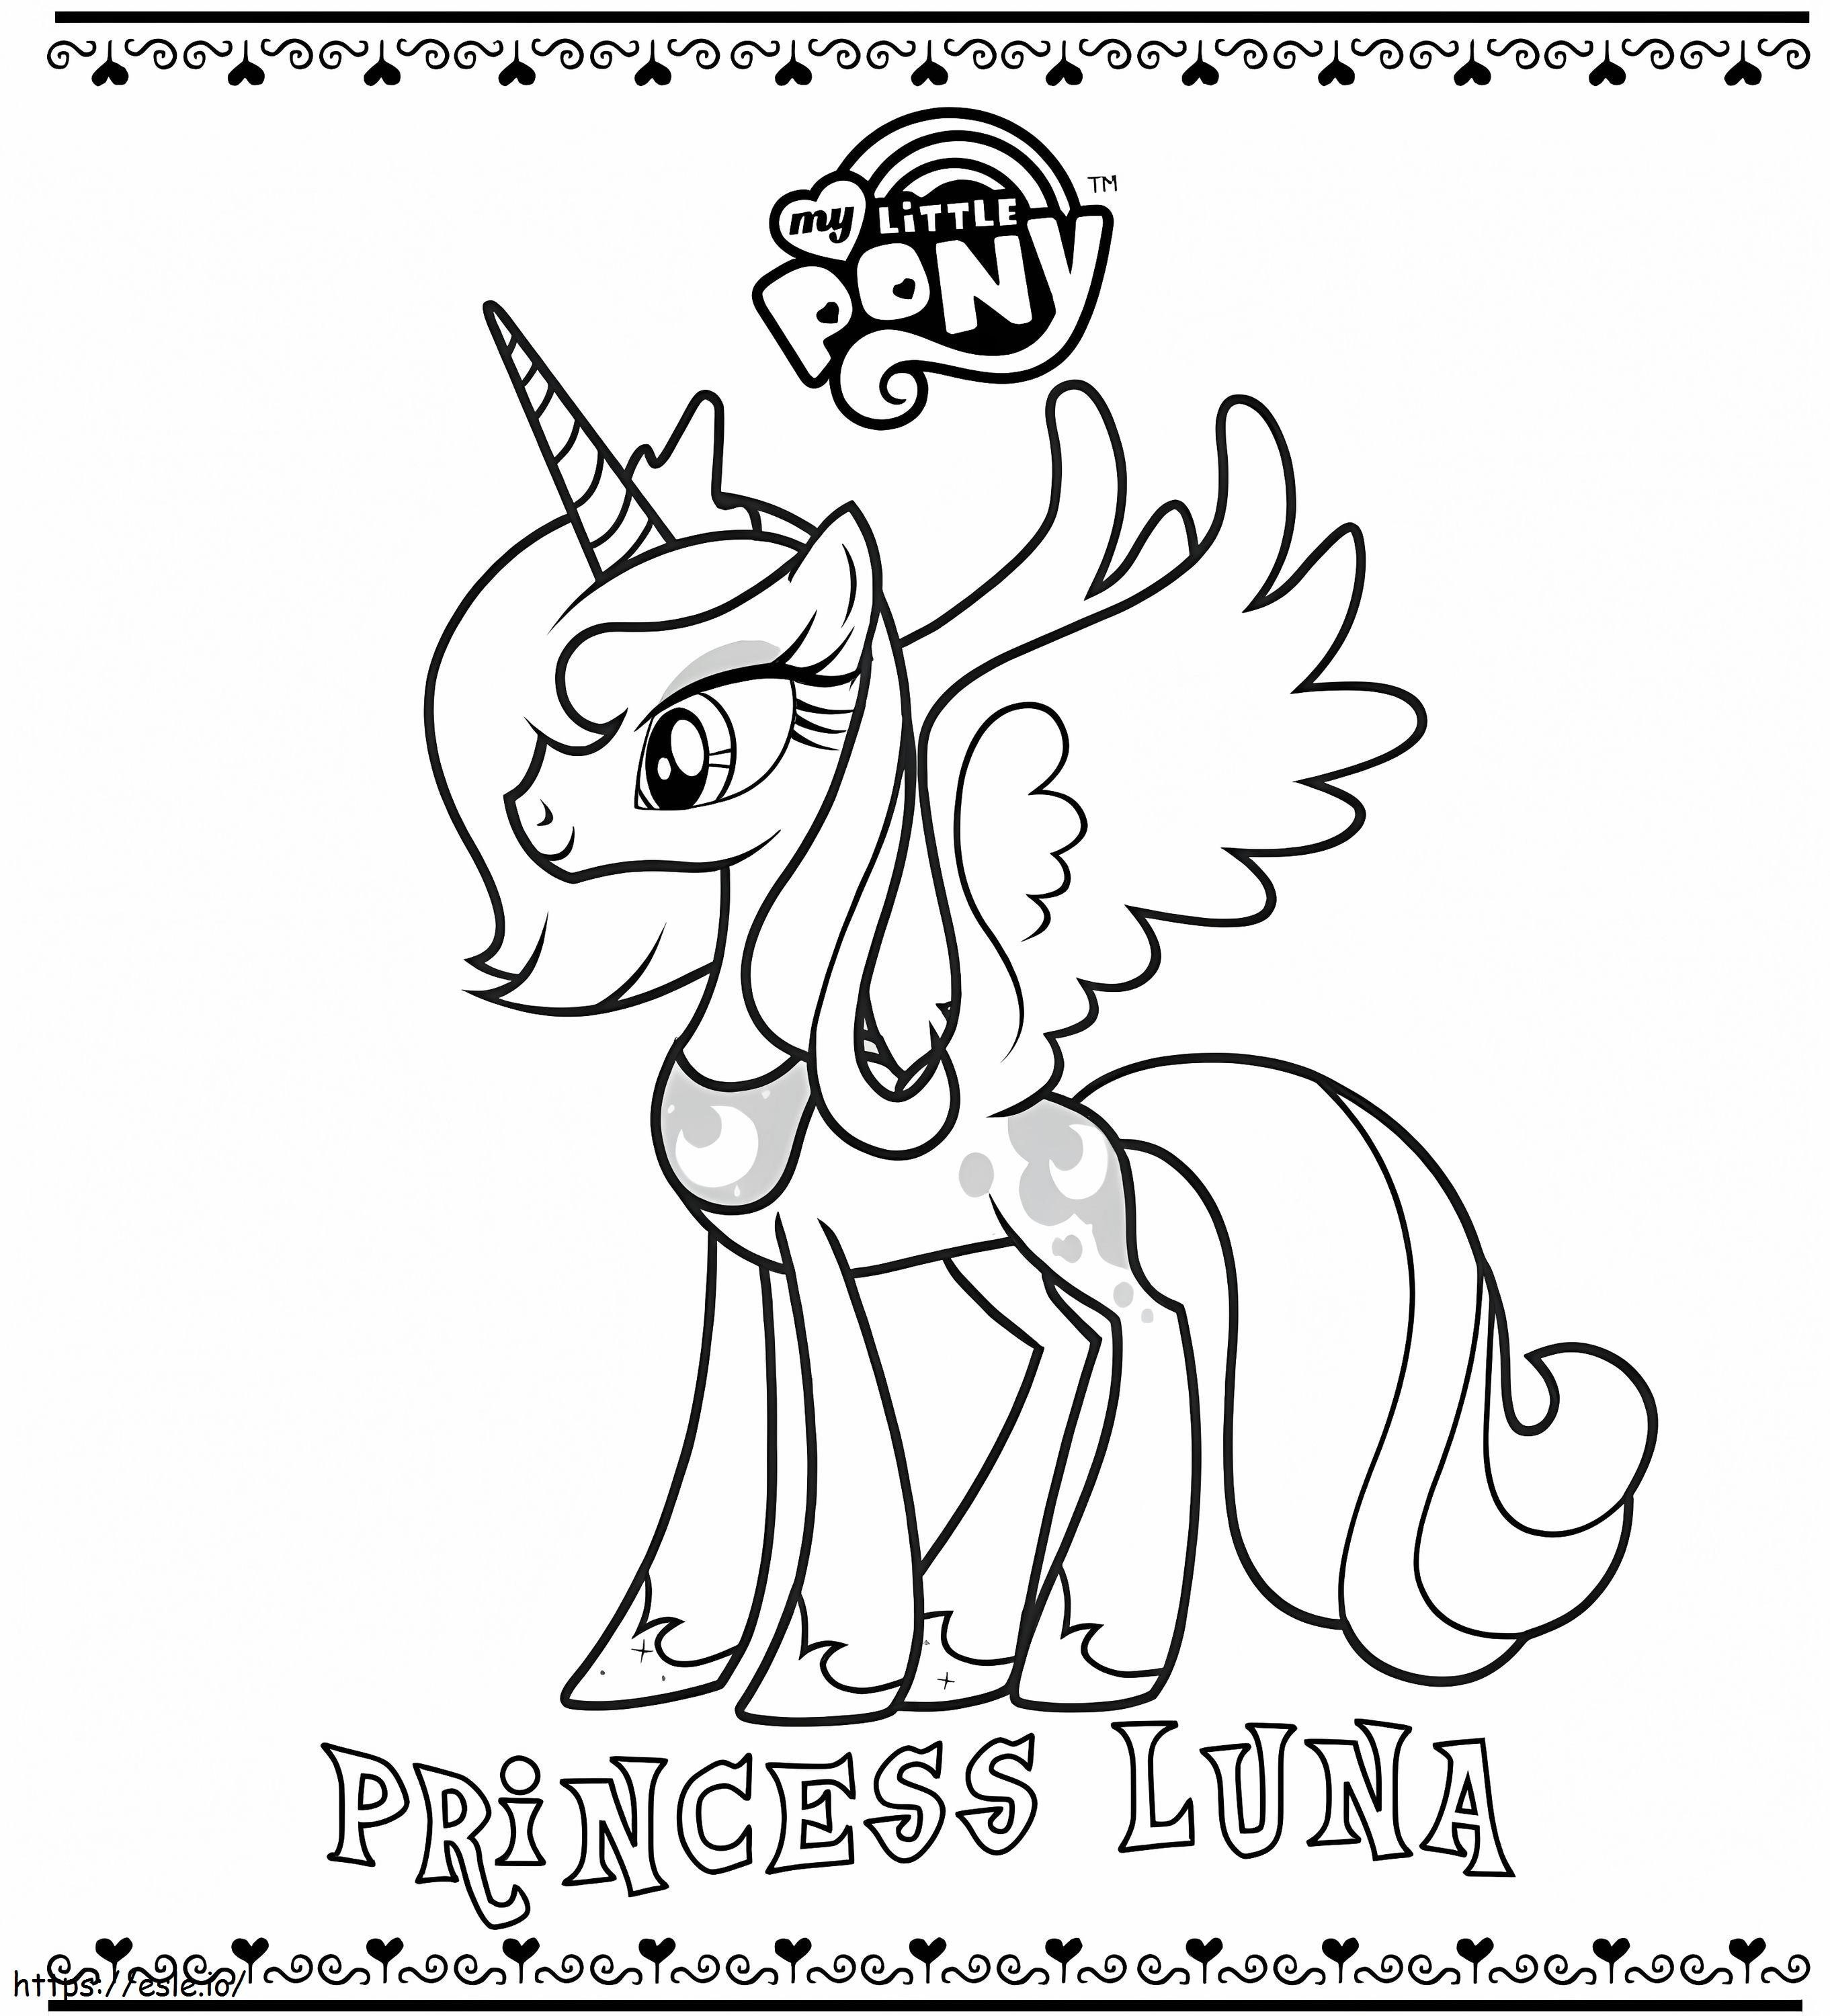 Stralende prinses Luna kleurplaat kleurplaat